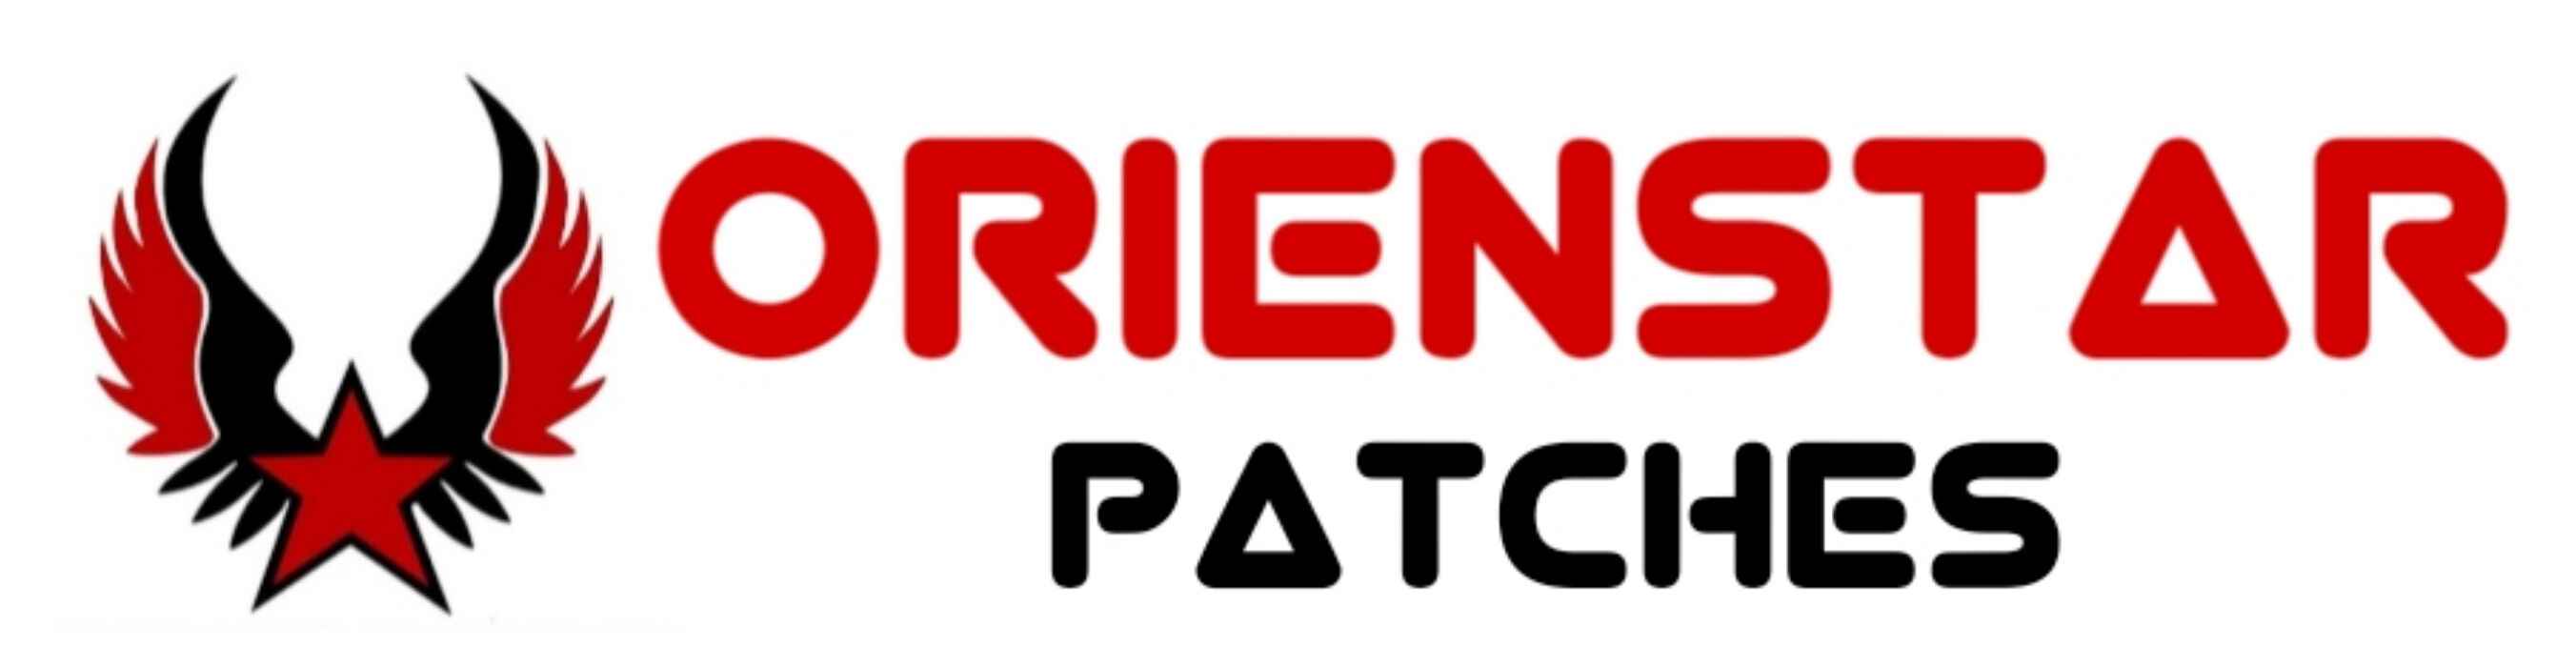 Orienstar Patches Logo